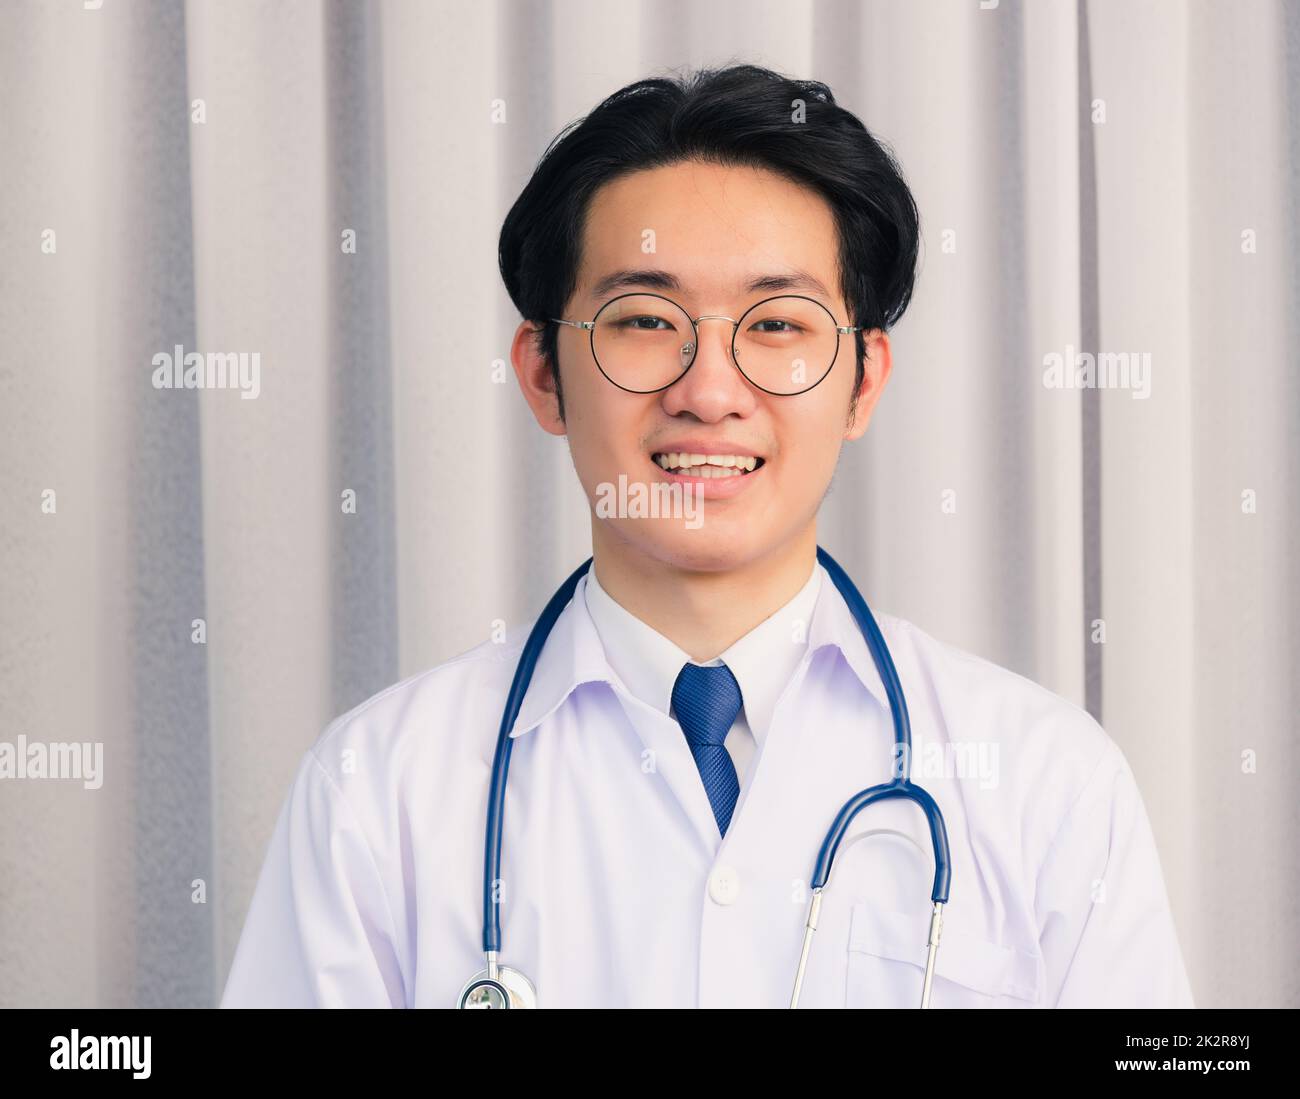 Ein lächelnder Arzt, der eine Online-Videokonferenz führt Stockfoto